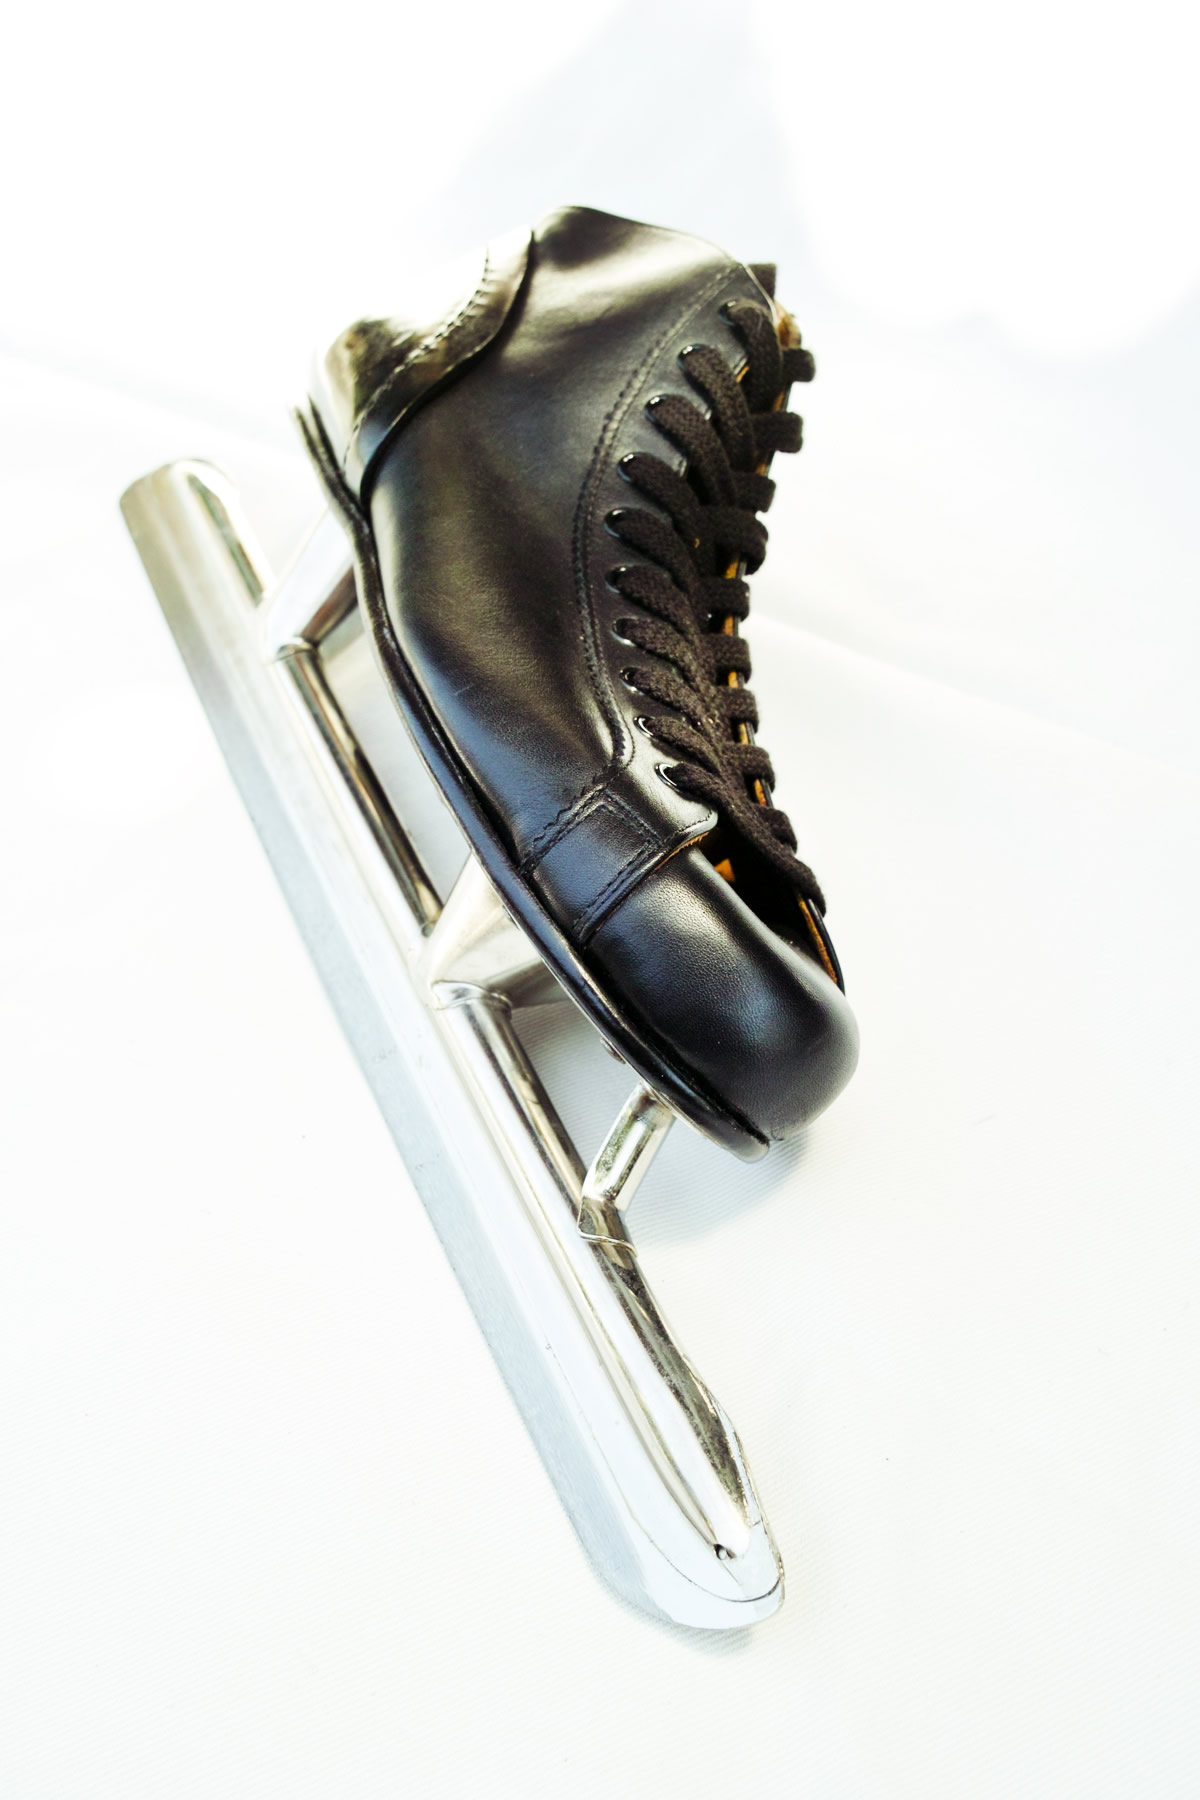 紳士靴はもちろんの事、スケート靴から登山靴までと、幅広い靴を作ることができます。